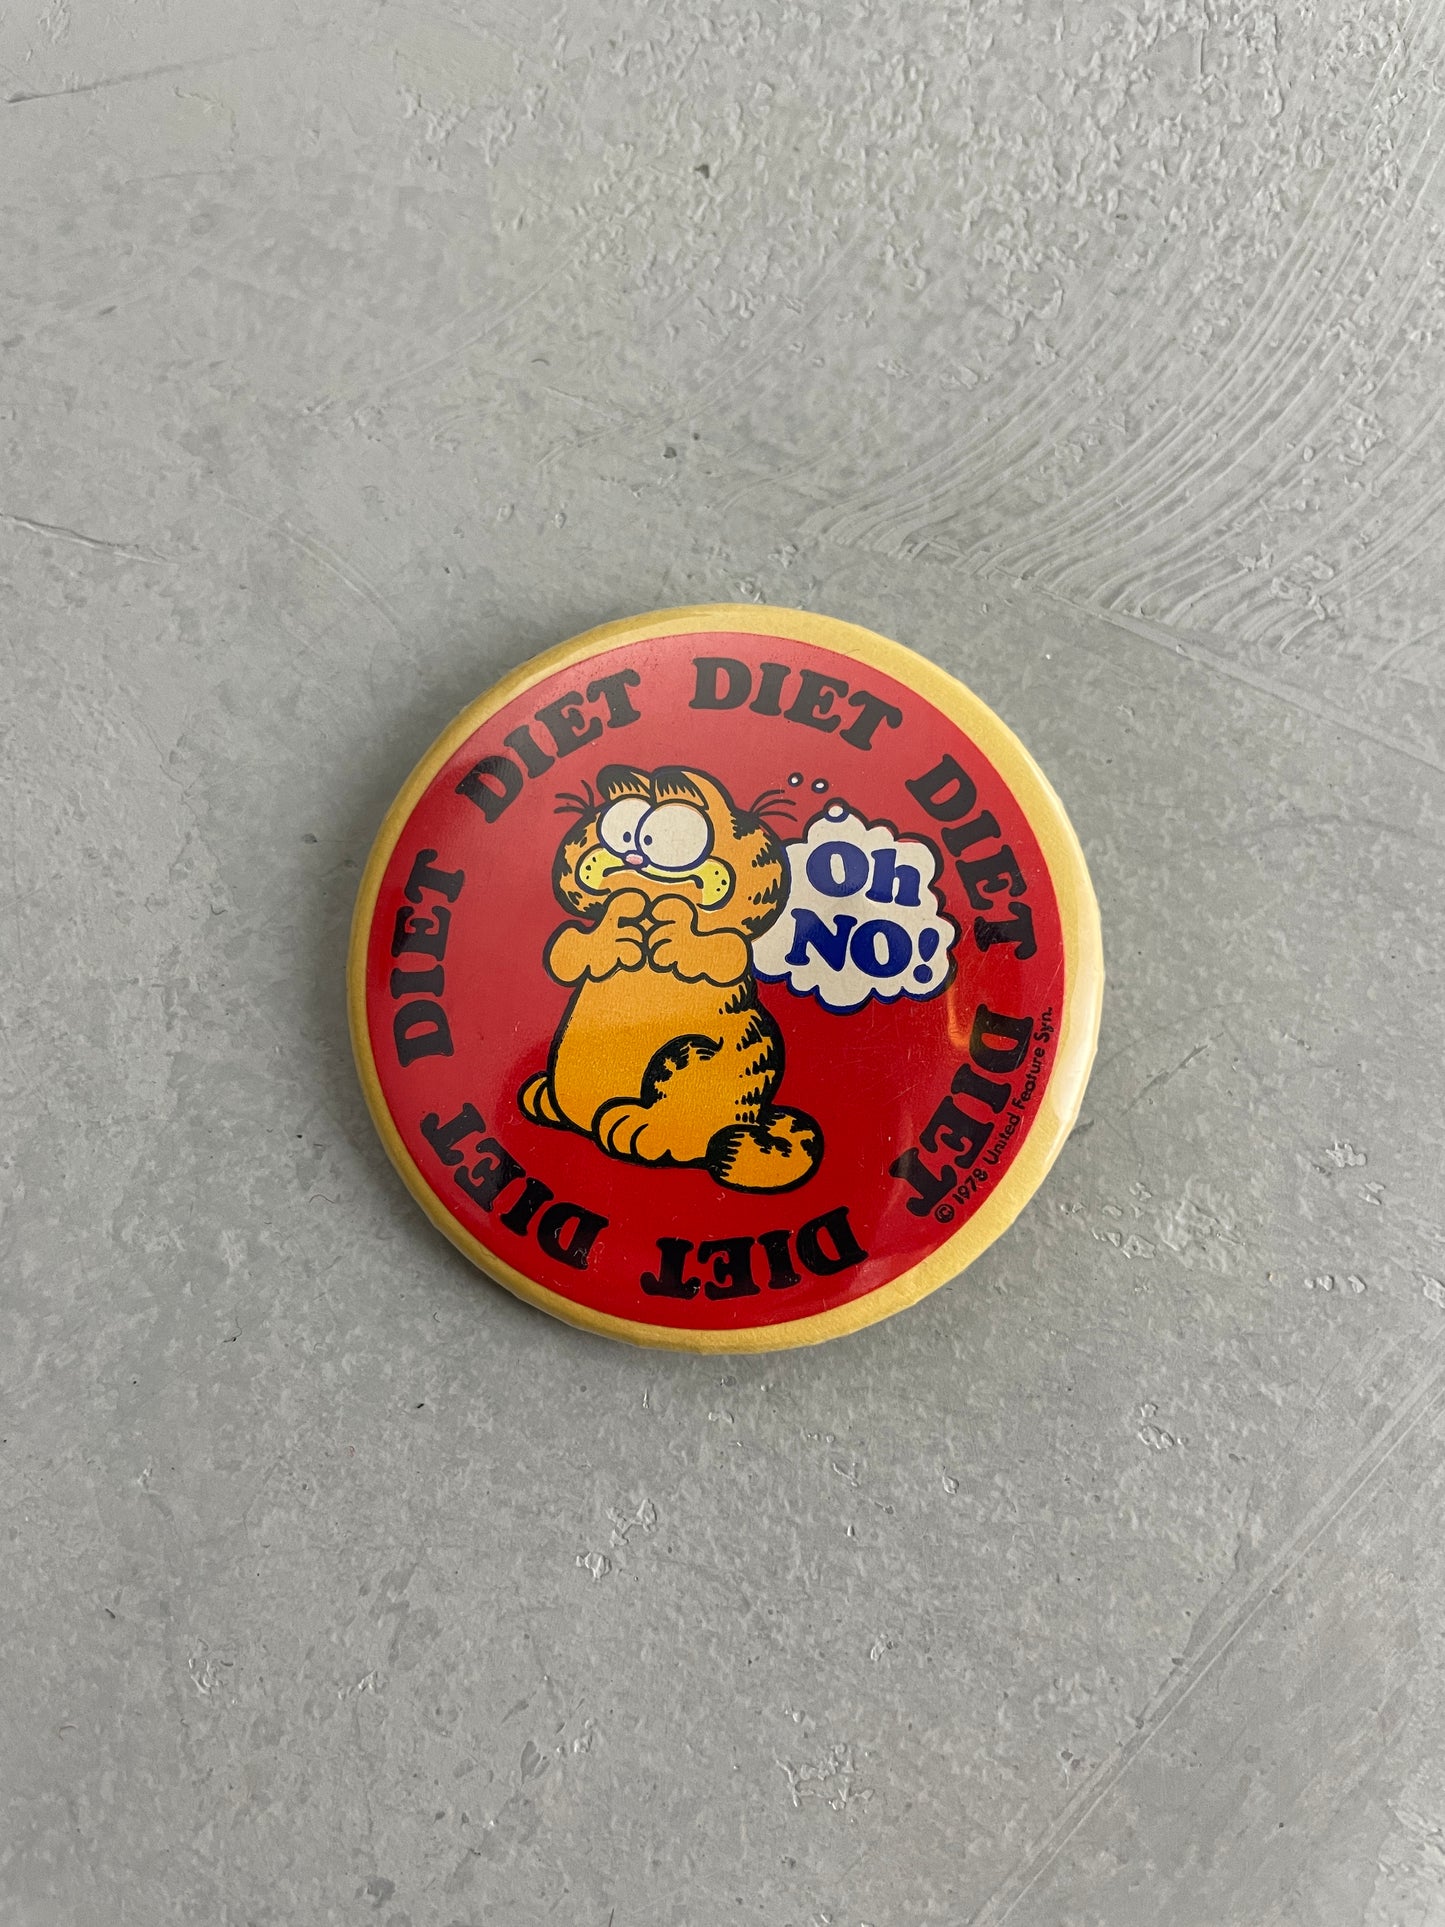 1978 Garfield Oh No! Diet Badge